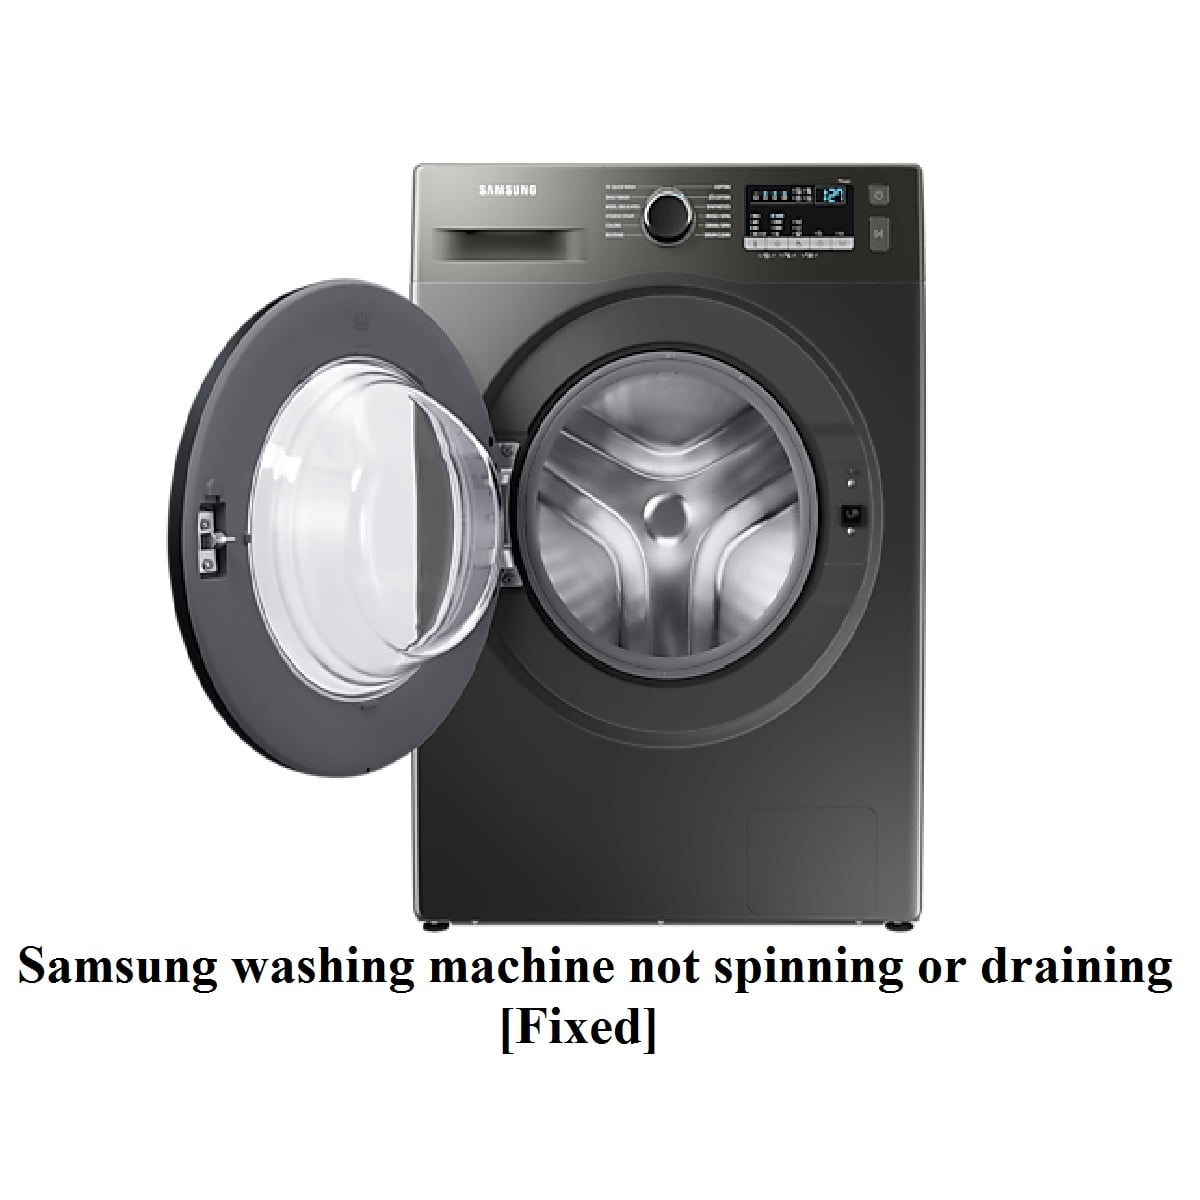 Samsung washing machine not draining or spinning